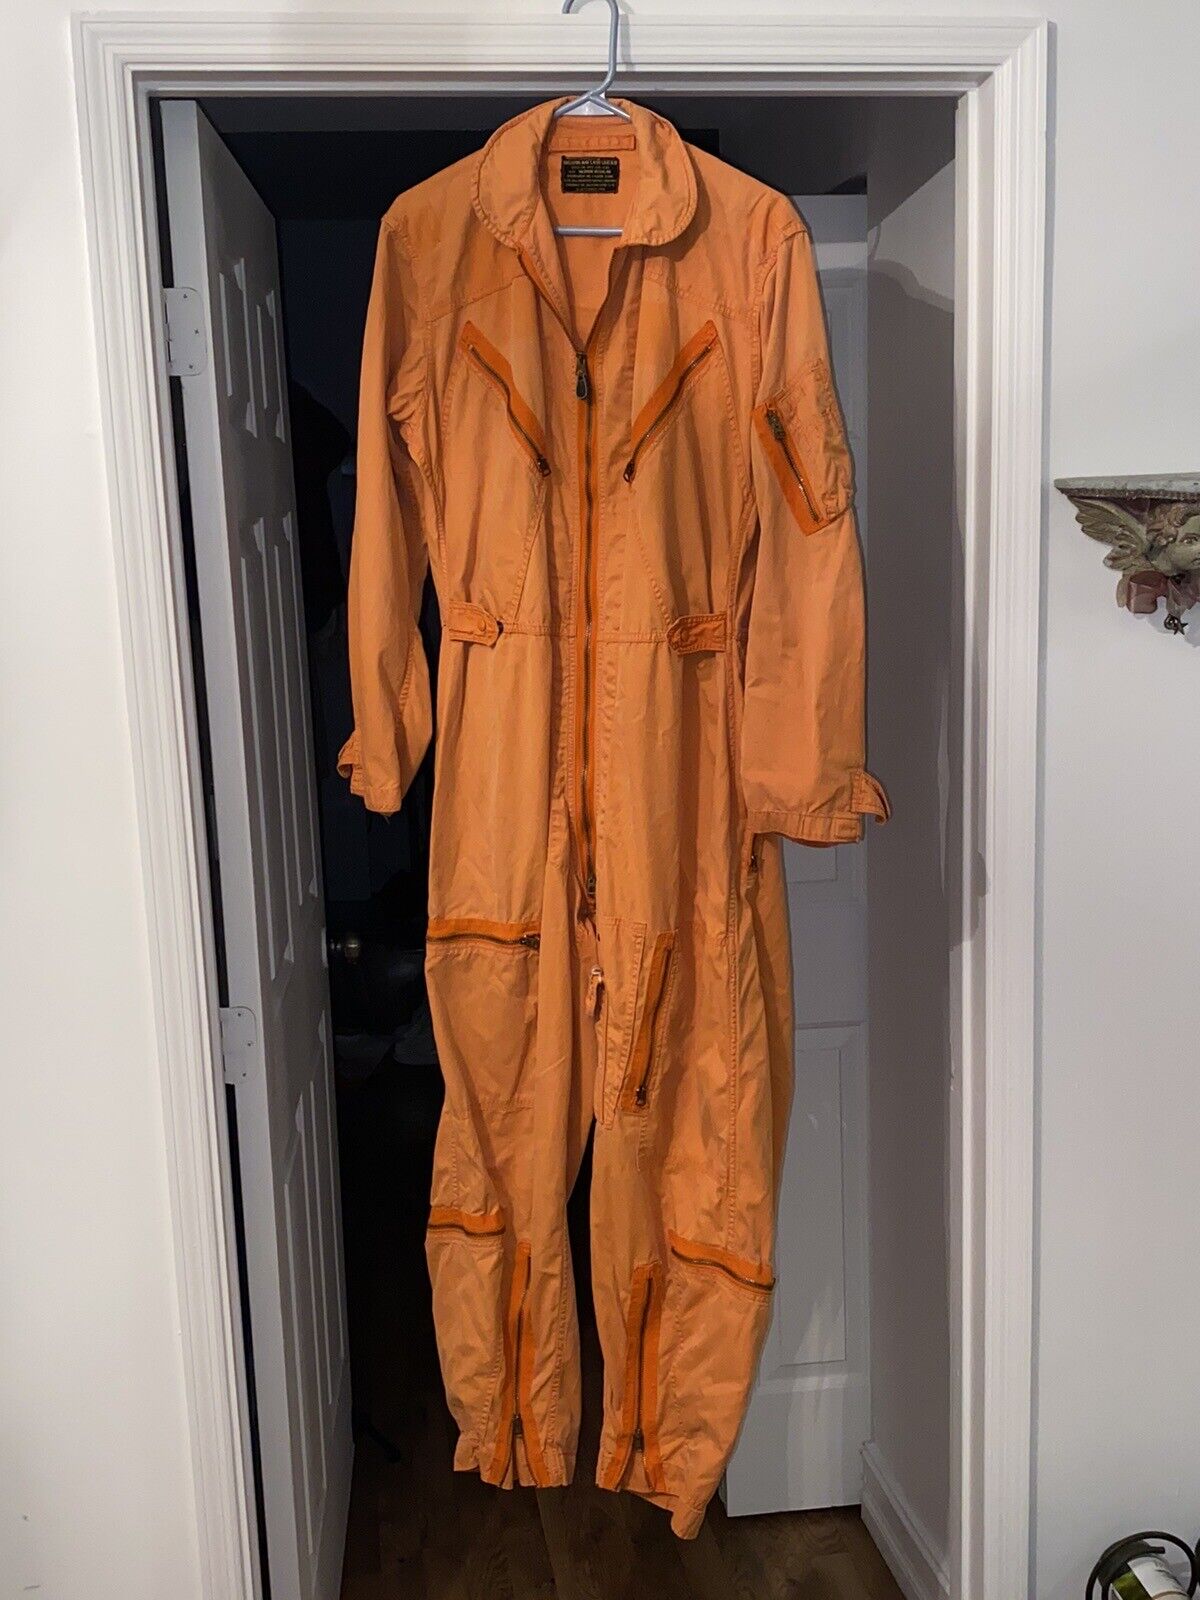 Vintage 1960 Flight Suit Orange Coveralls Jumpsuit US Military USAF Medium